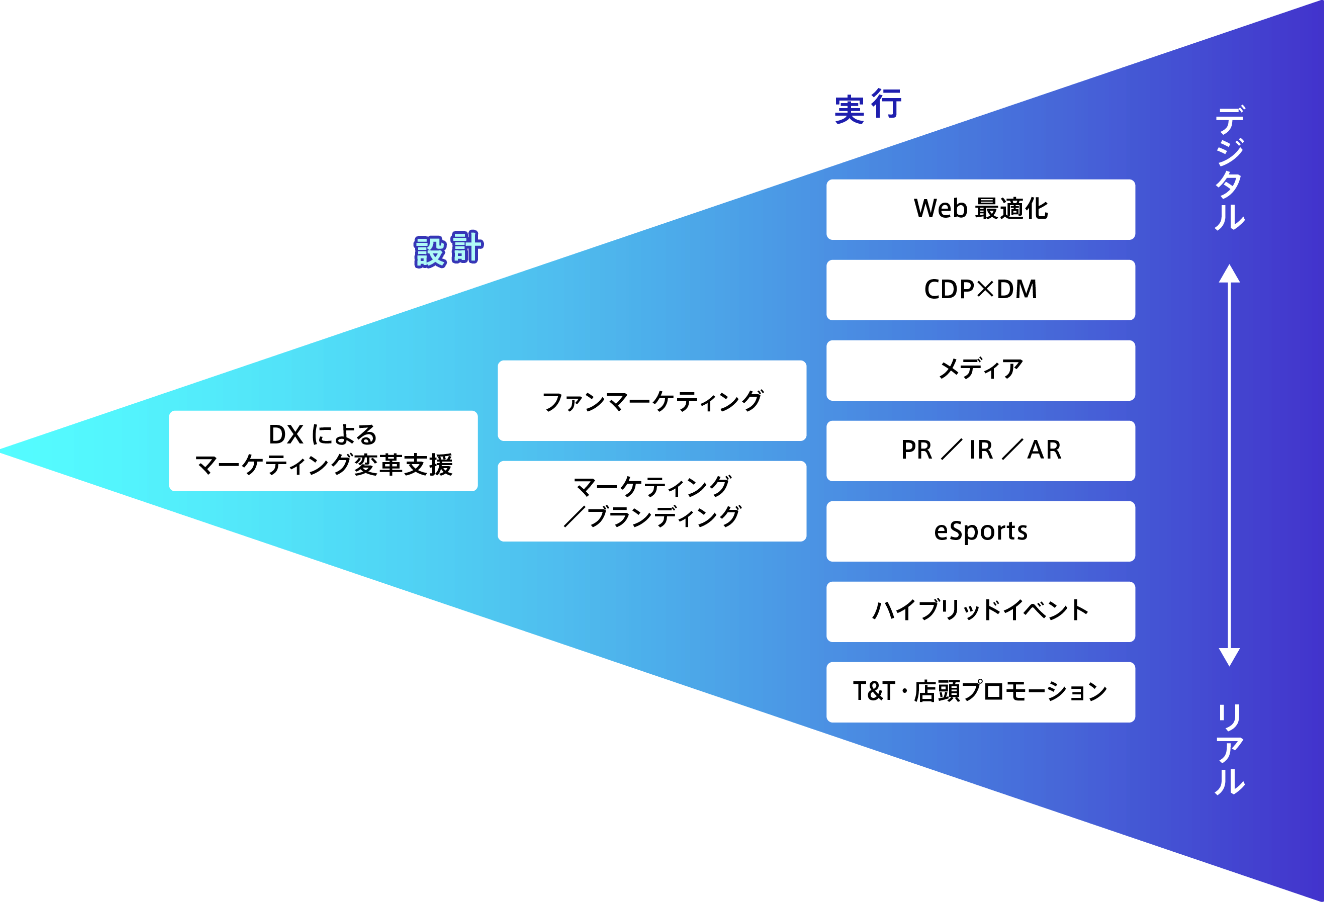 10個のソリューションを一覧にまとめた図。NTTアドが戦略から実行まで、リアルもデジタルも含めて支援できることを表している。